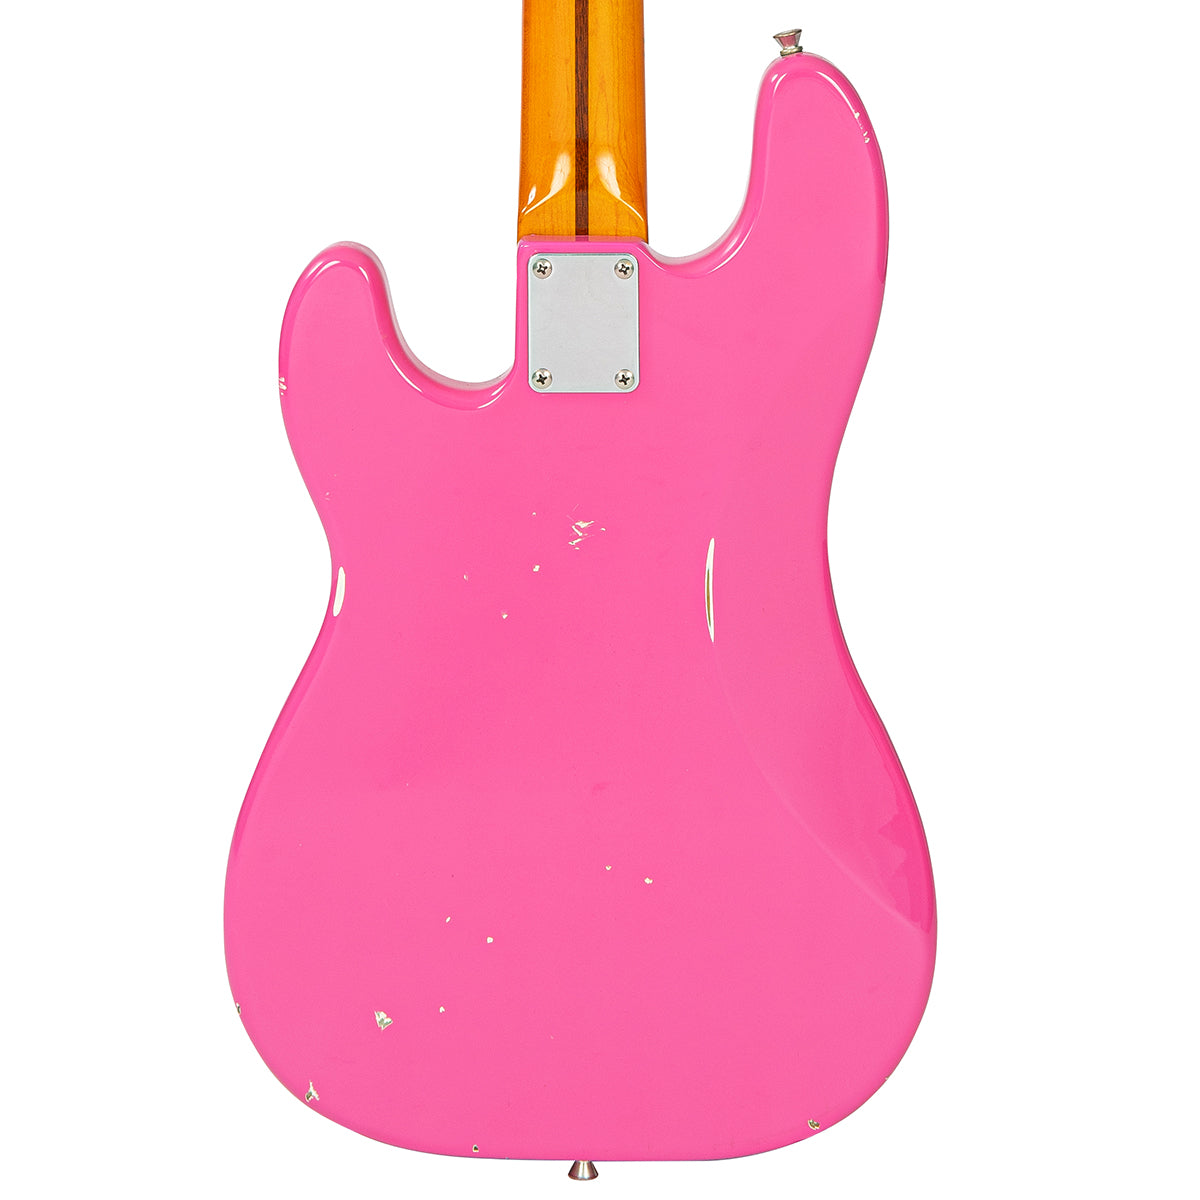 SOLD - Vintage V42 ProShop Custom ~ Distressed Bubblegum Pink, Electric Guitars for sale at Richards Guitars.